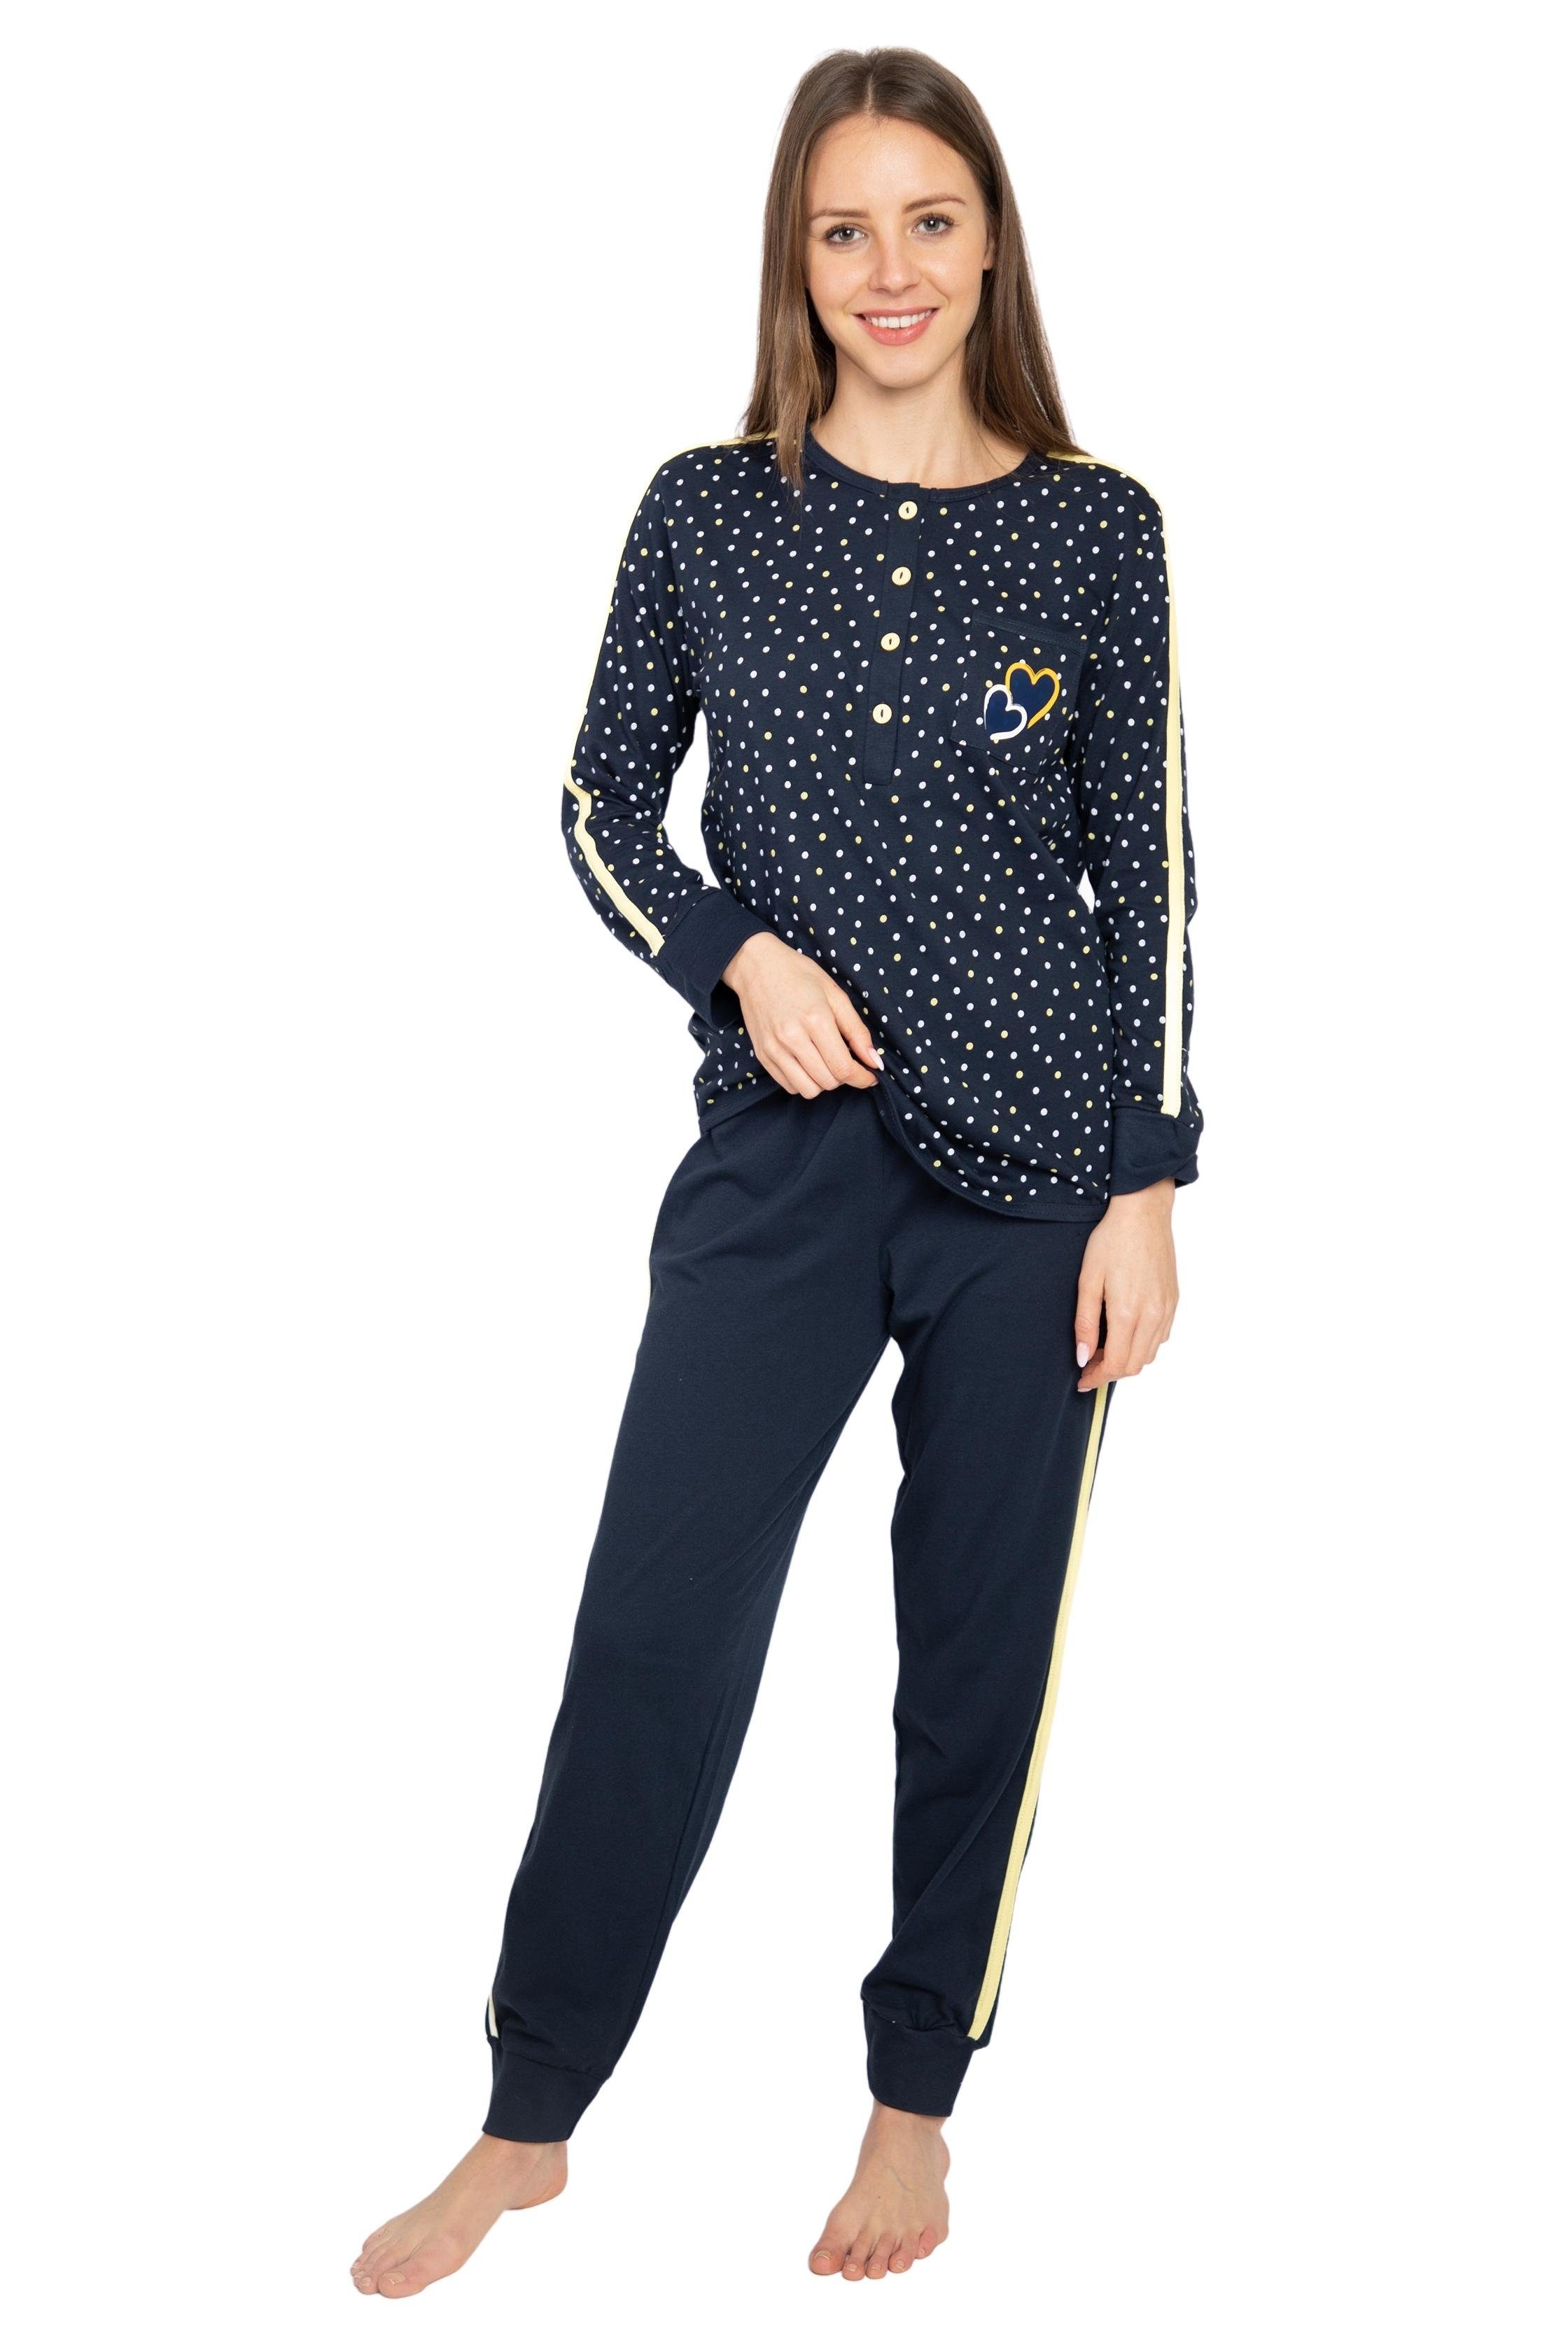 DW727 reiner blau-gelb Baumwolle-Jersey Pyjama Consult-Tex (Packung) Aus Qualität